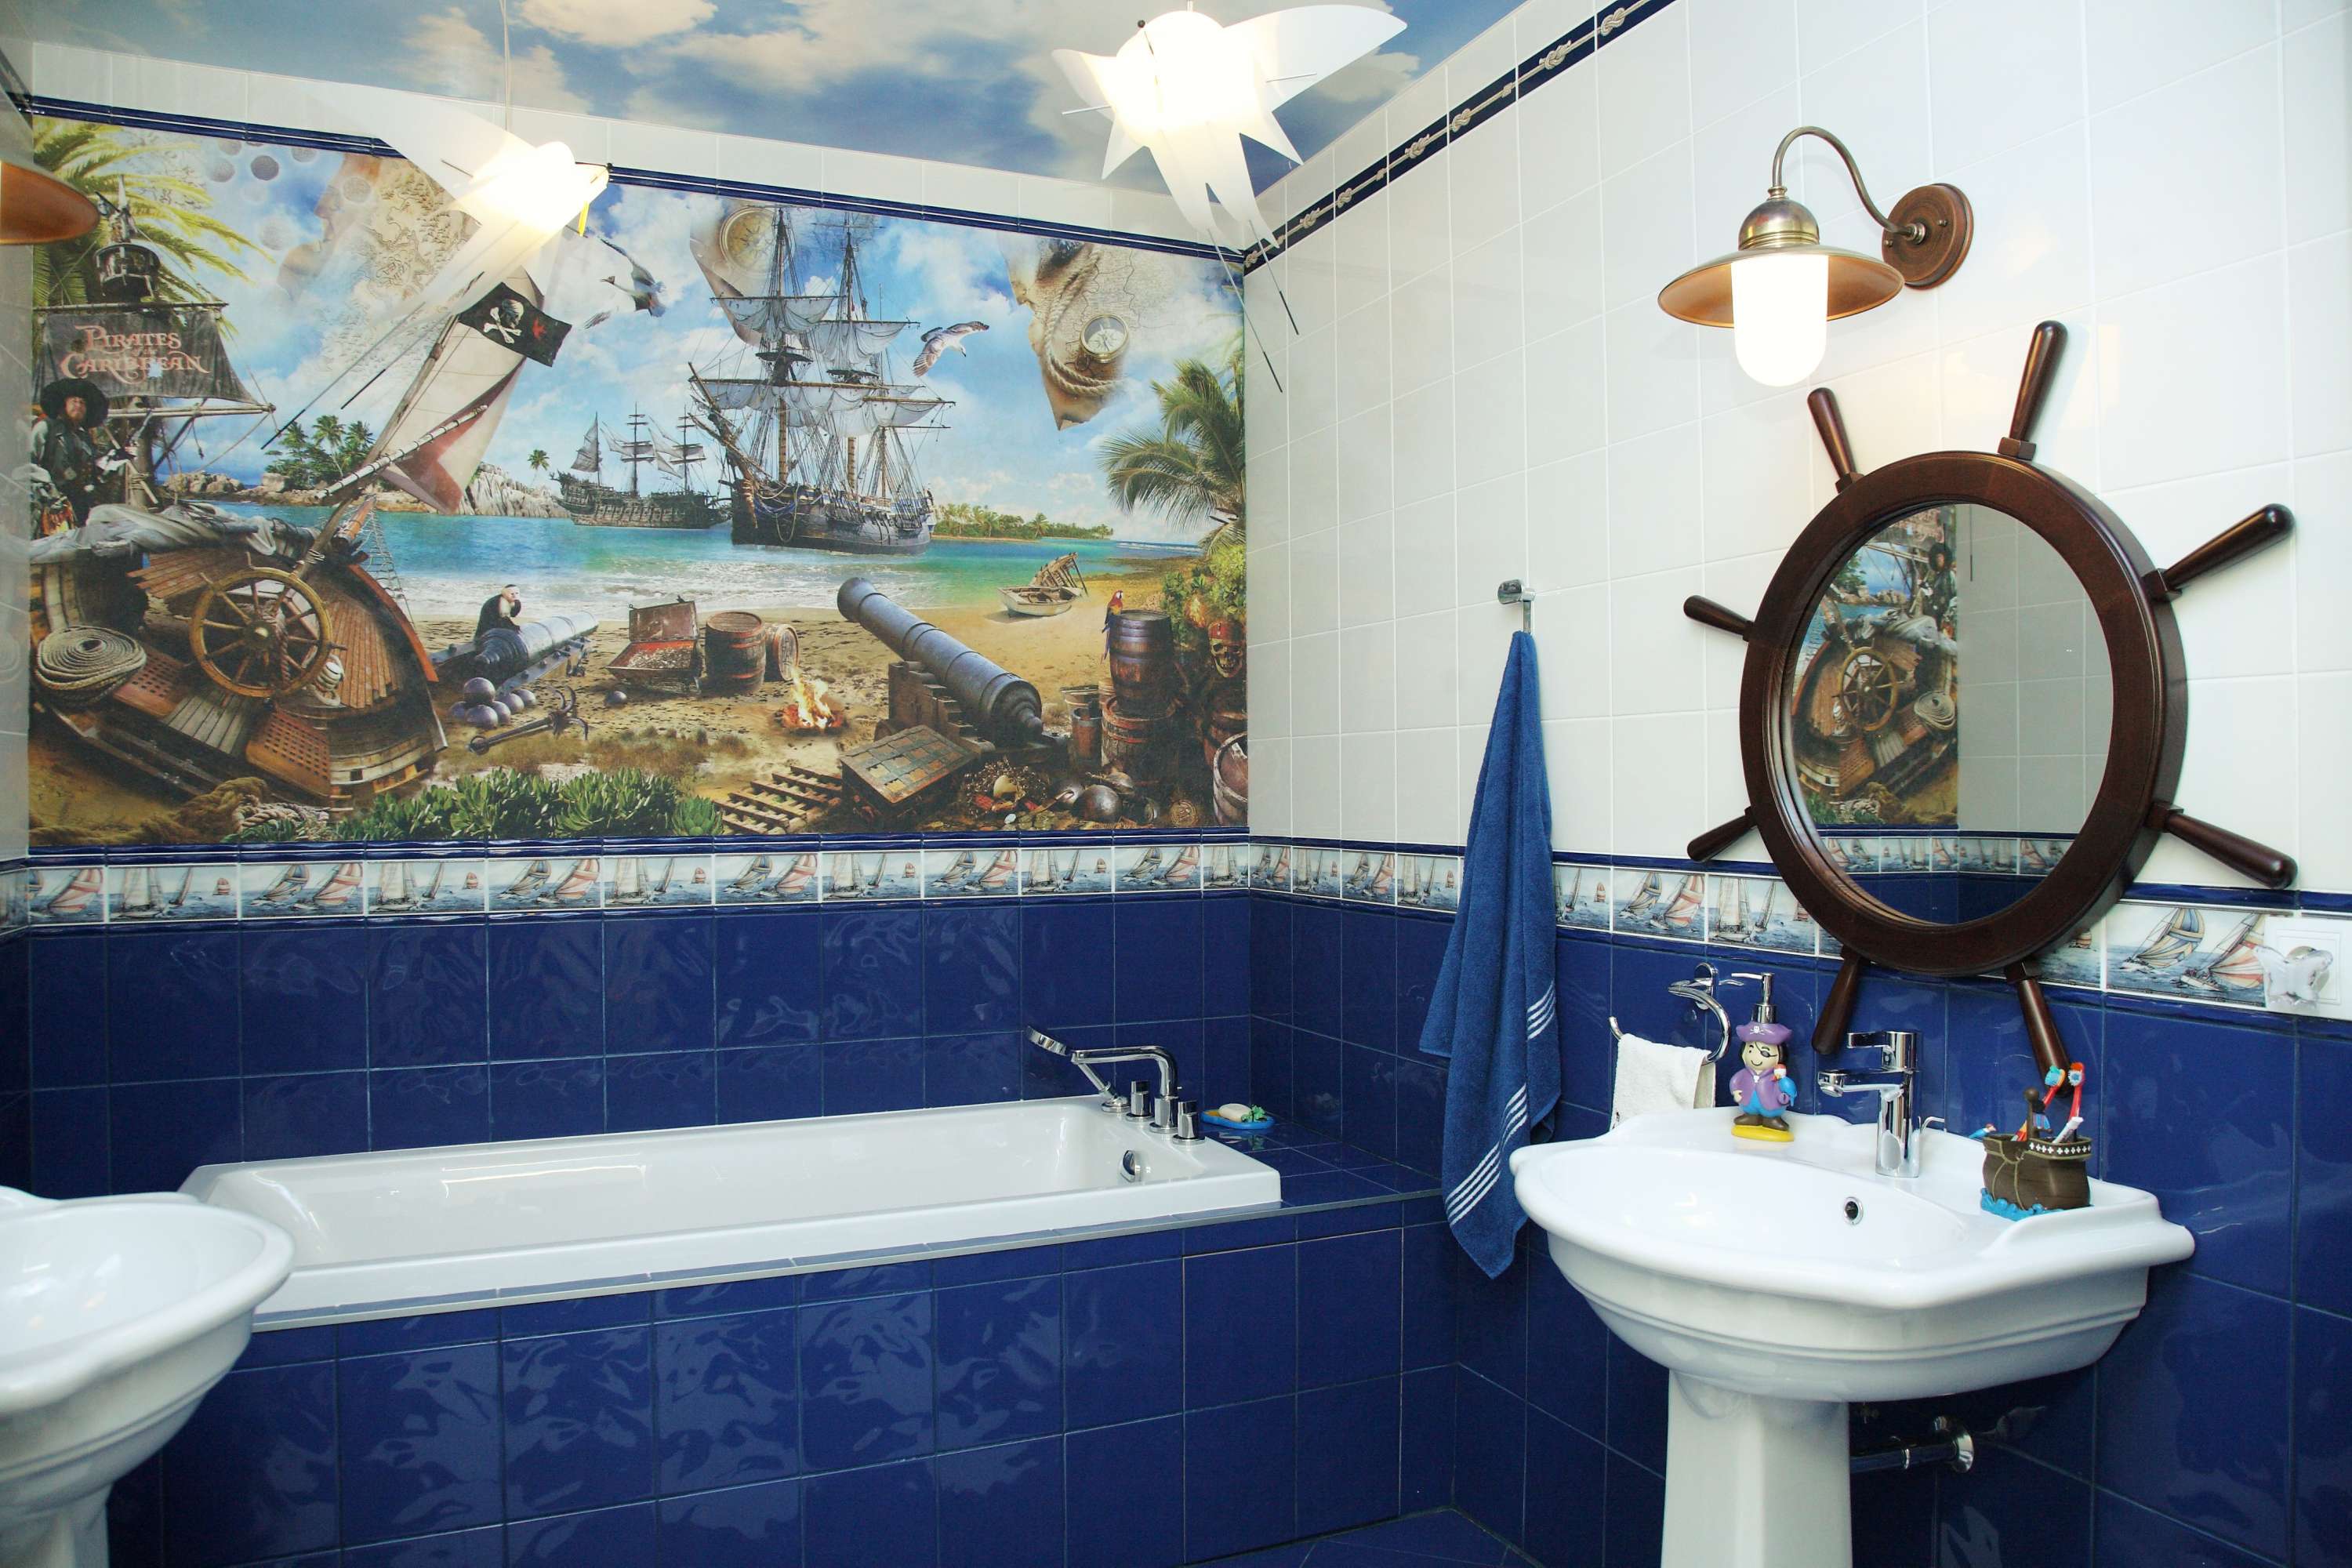 Ванная комната в морском стиле - варианты оформления ванной в морском стиле (+фото)